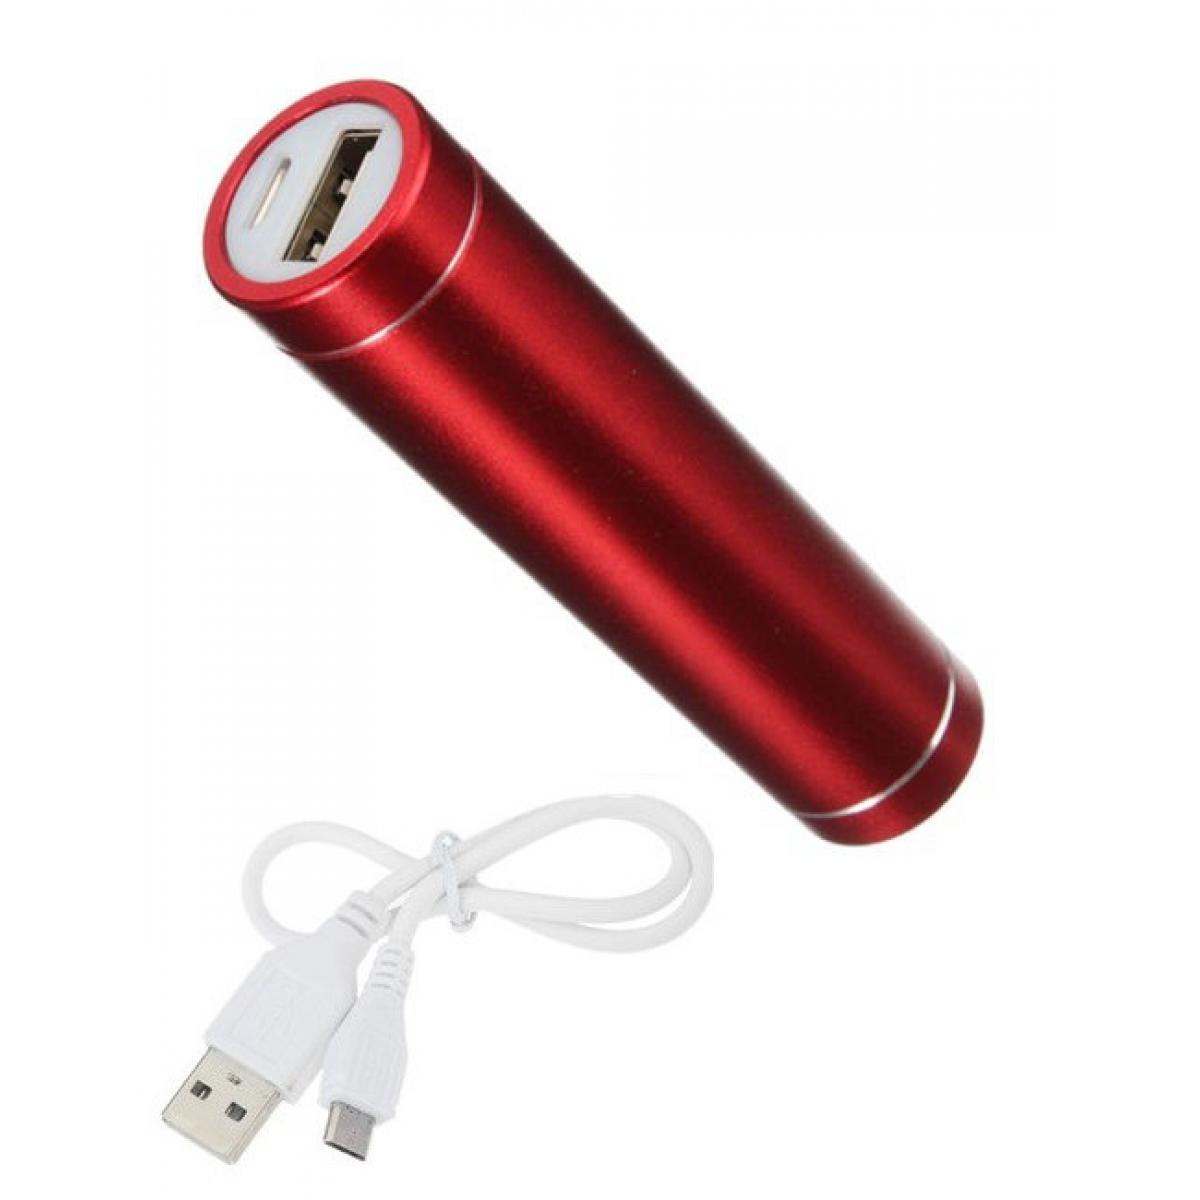 Shot - Batterie Chargeur Externe pour SAMSUNG Galaxy NOTE 10+ Power Bank 2600mAh avec Cable USB/Mirco USB Secours Telephone (ROUGE) - Chargeur secteur téléphone